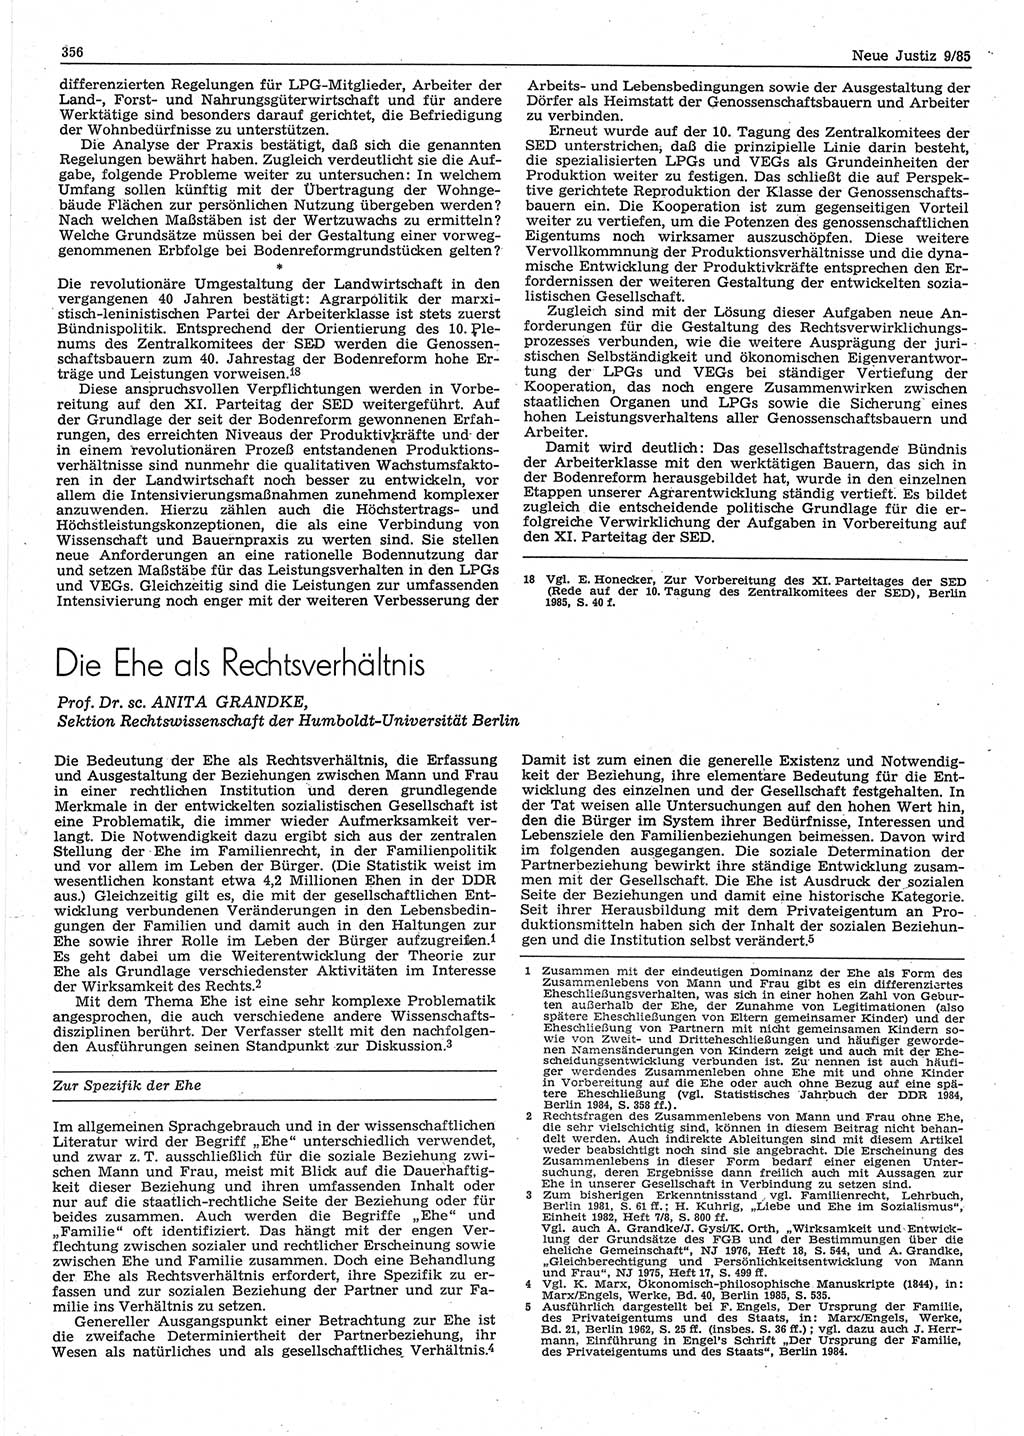 Neue Justiz (NJ), Zeitschrift für sozialistisches Recht und Gesetzlichkeit [Deutsche Demokratische Republik (DDR)], 39. Jahrgang 1985, Seite 356 (NJ DDR 1985, S. 356)